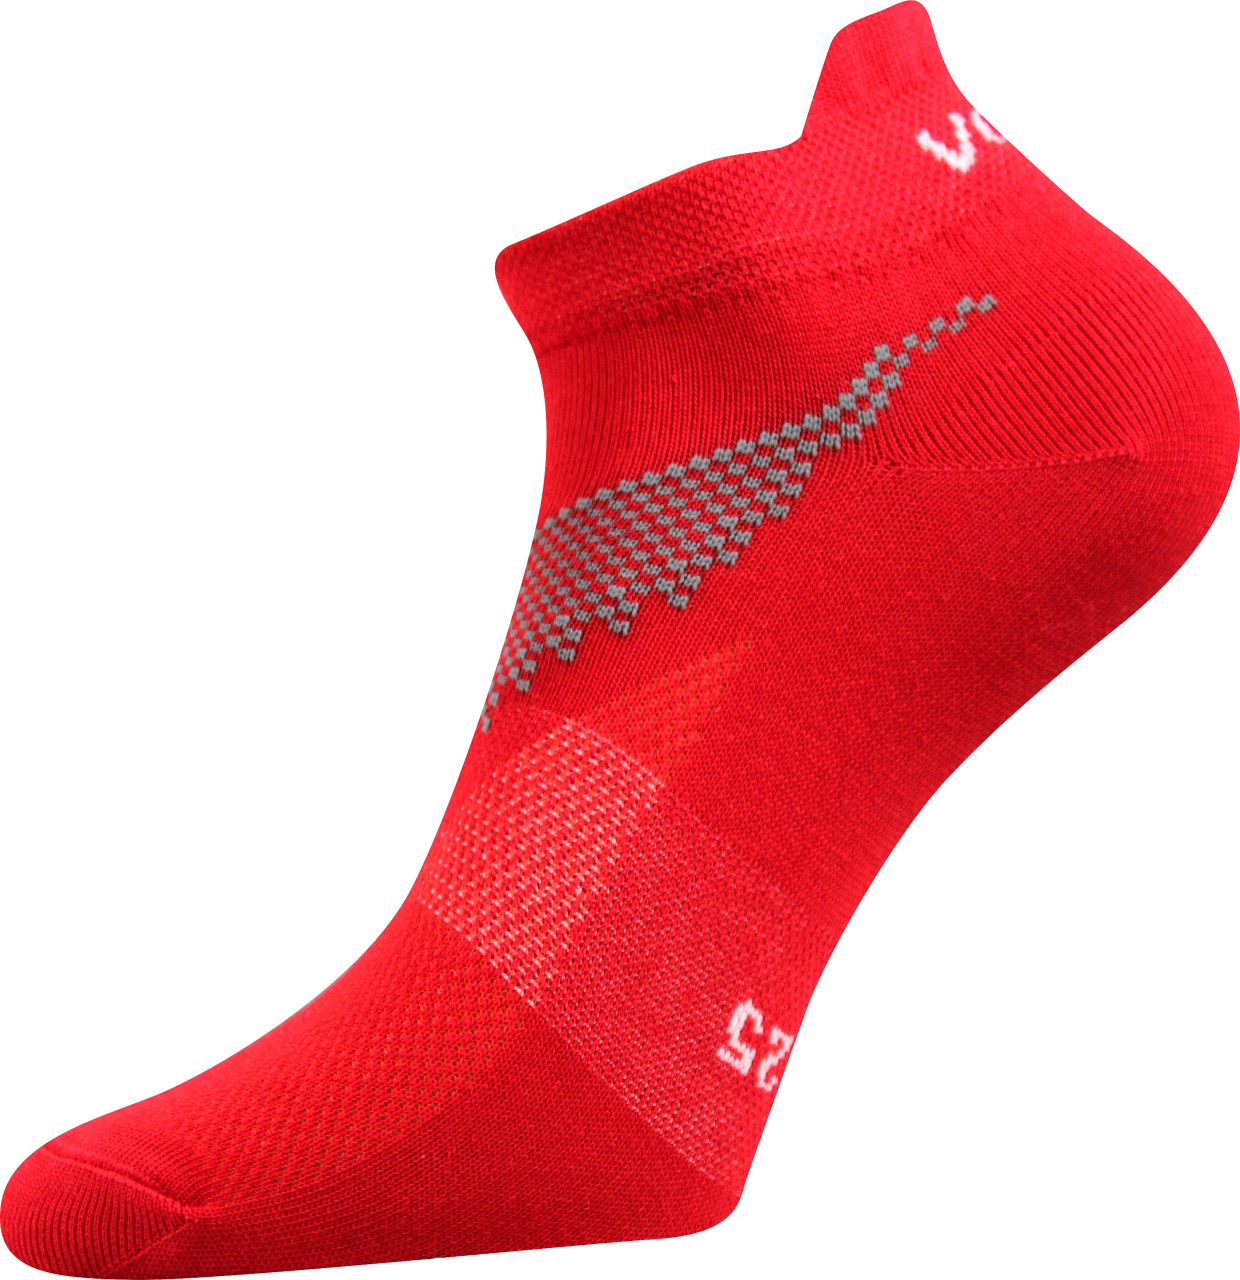 Ponožky sportovní nízké Voxx Iris - červené, 47-50